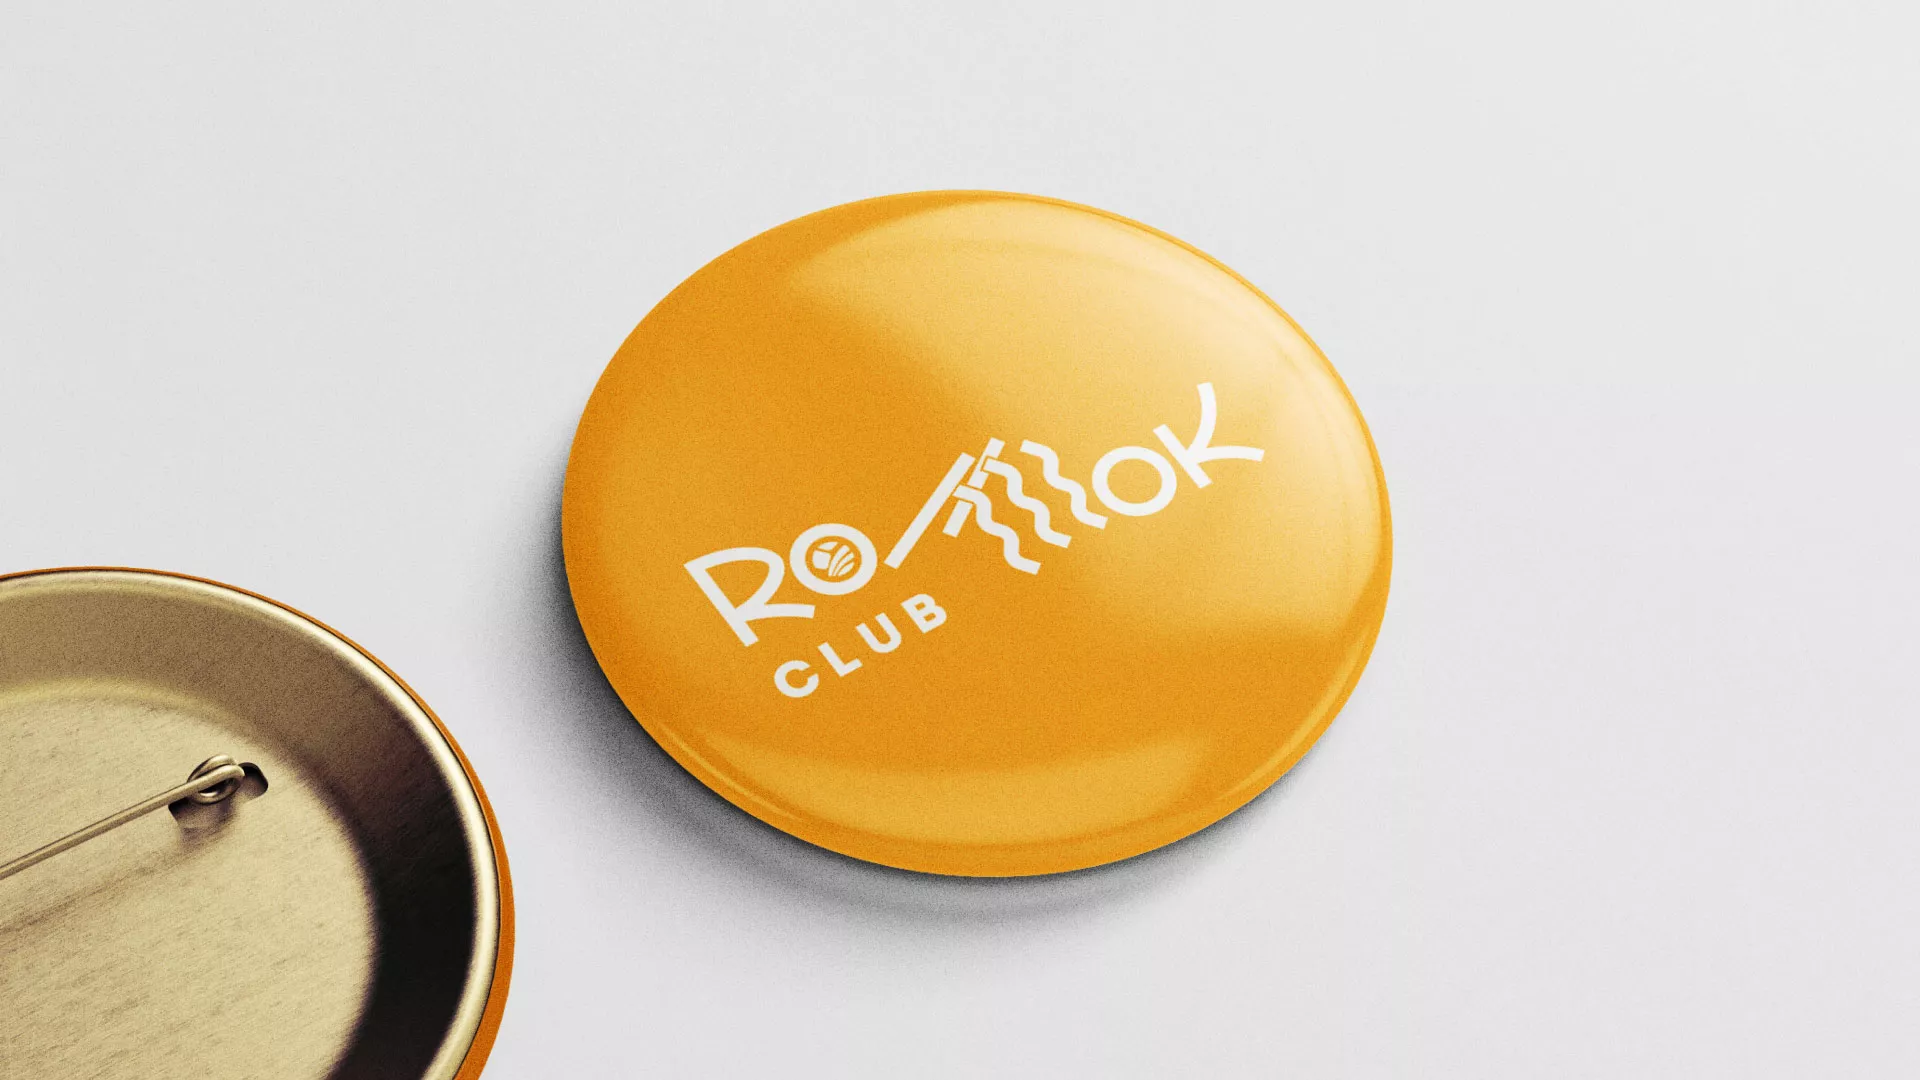 Создание логотипа суши-бара «Roll Wok Club» в Чкаловском